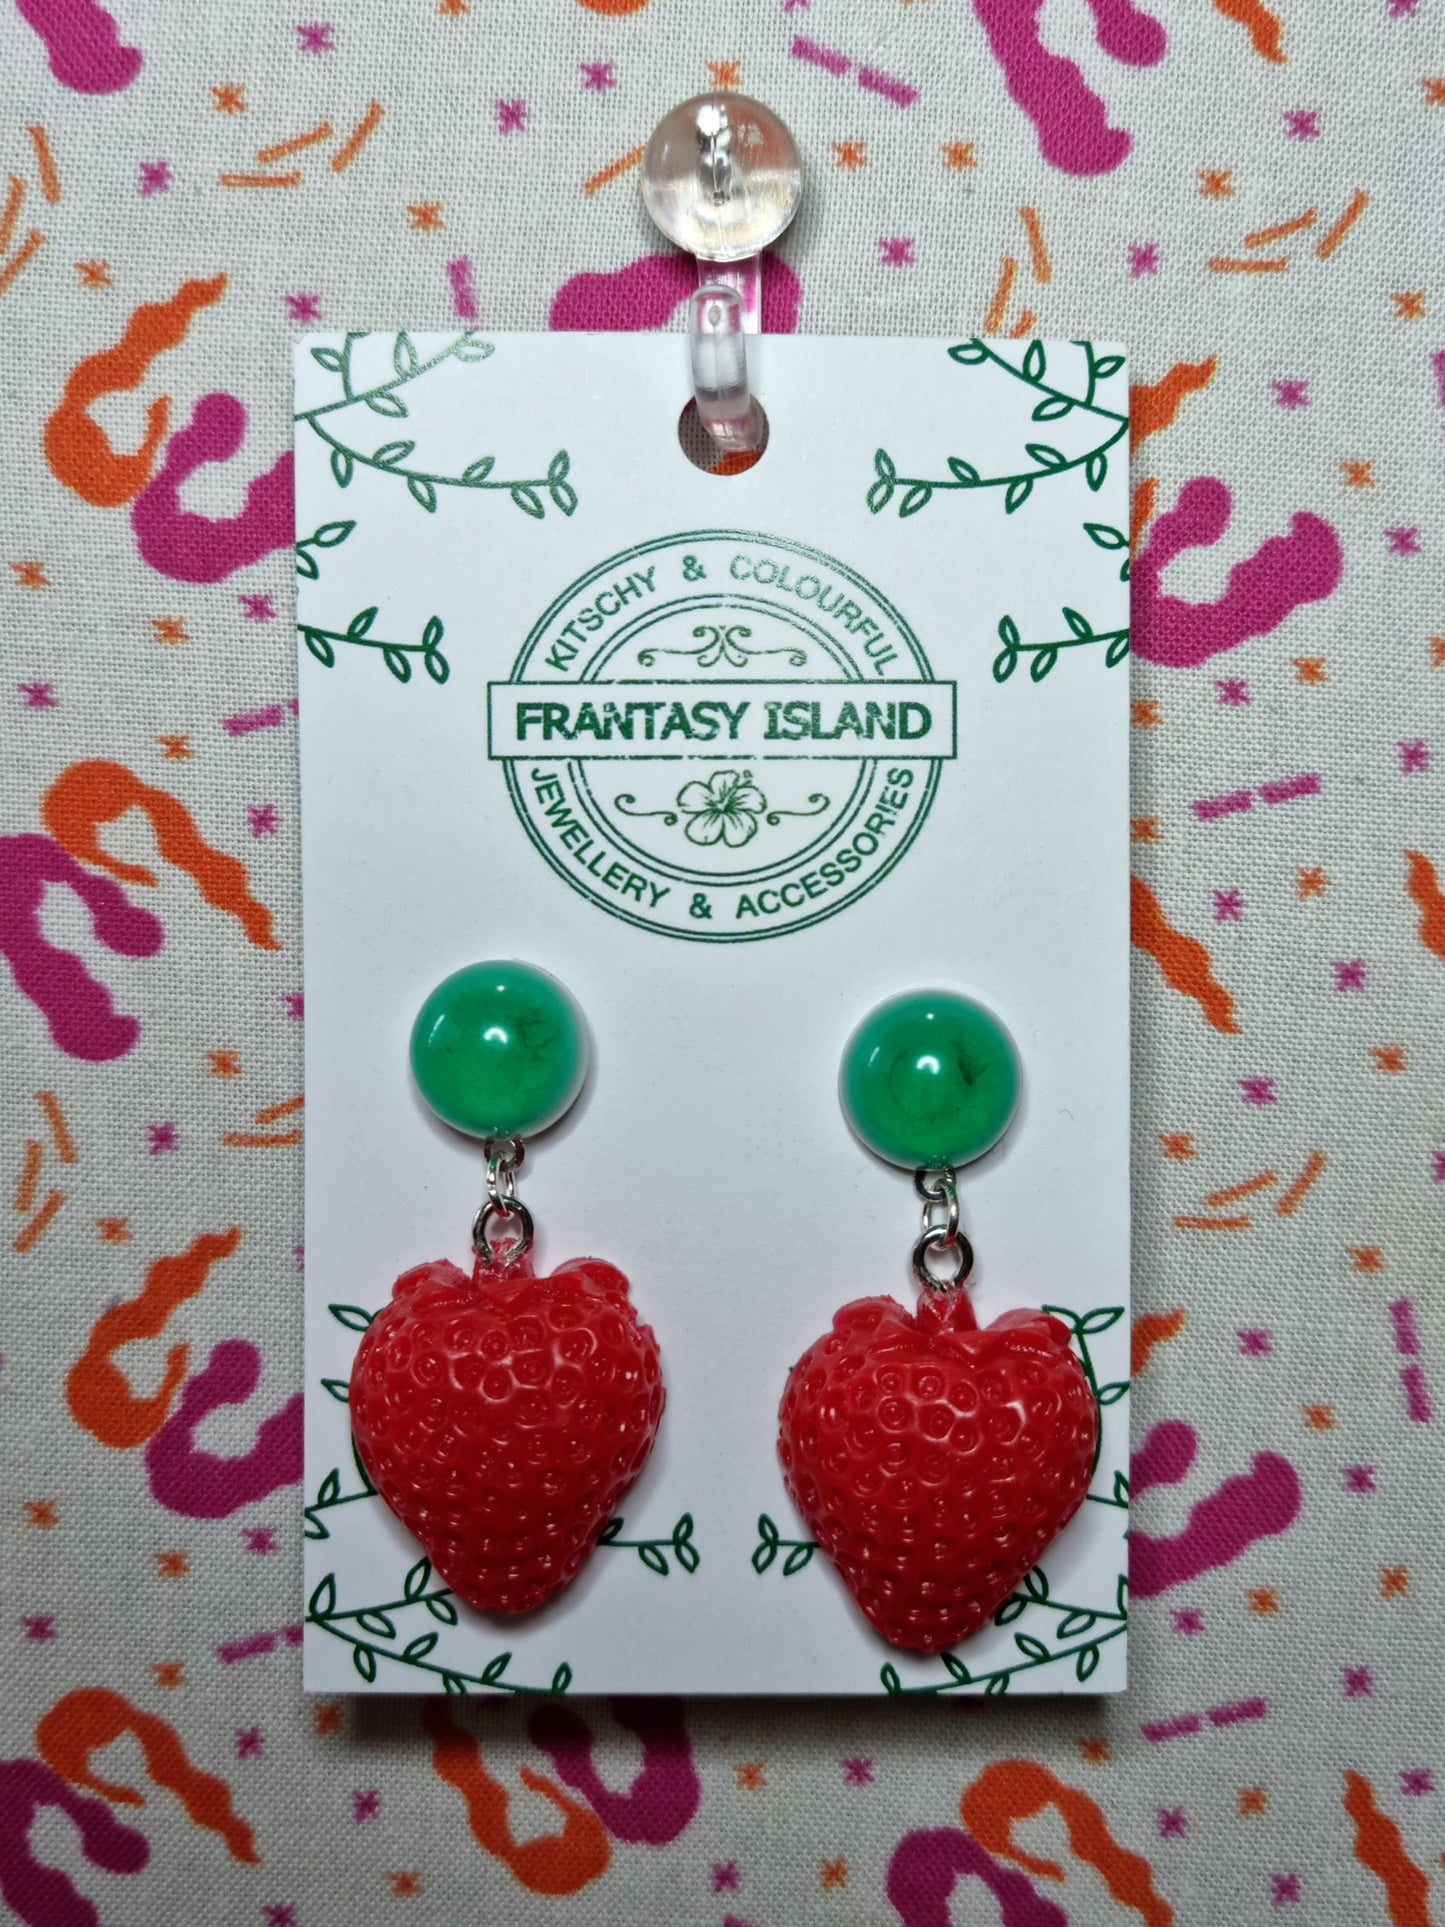 Strawberry Drop Earrings